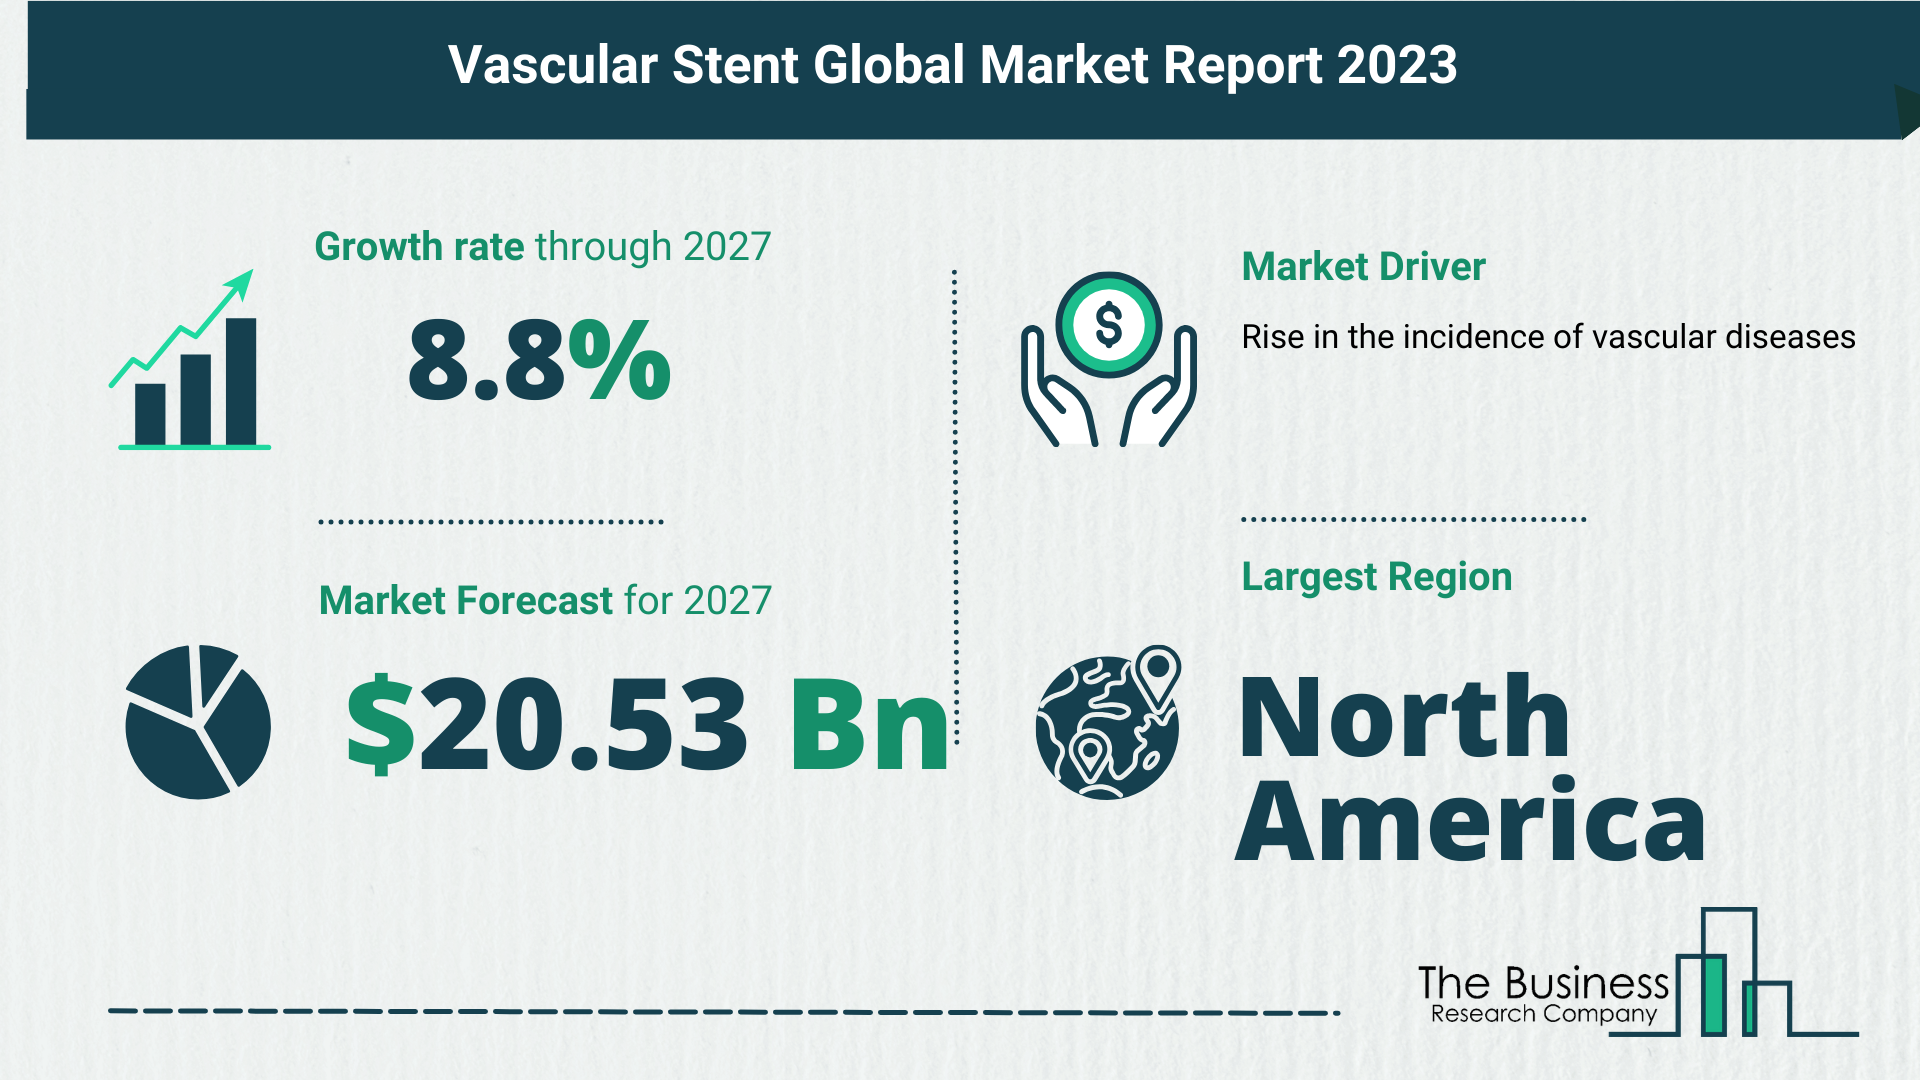 Global Vascular Stent Market